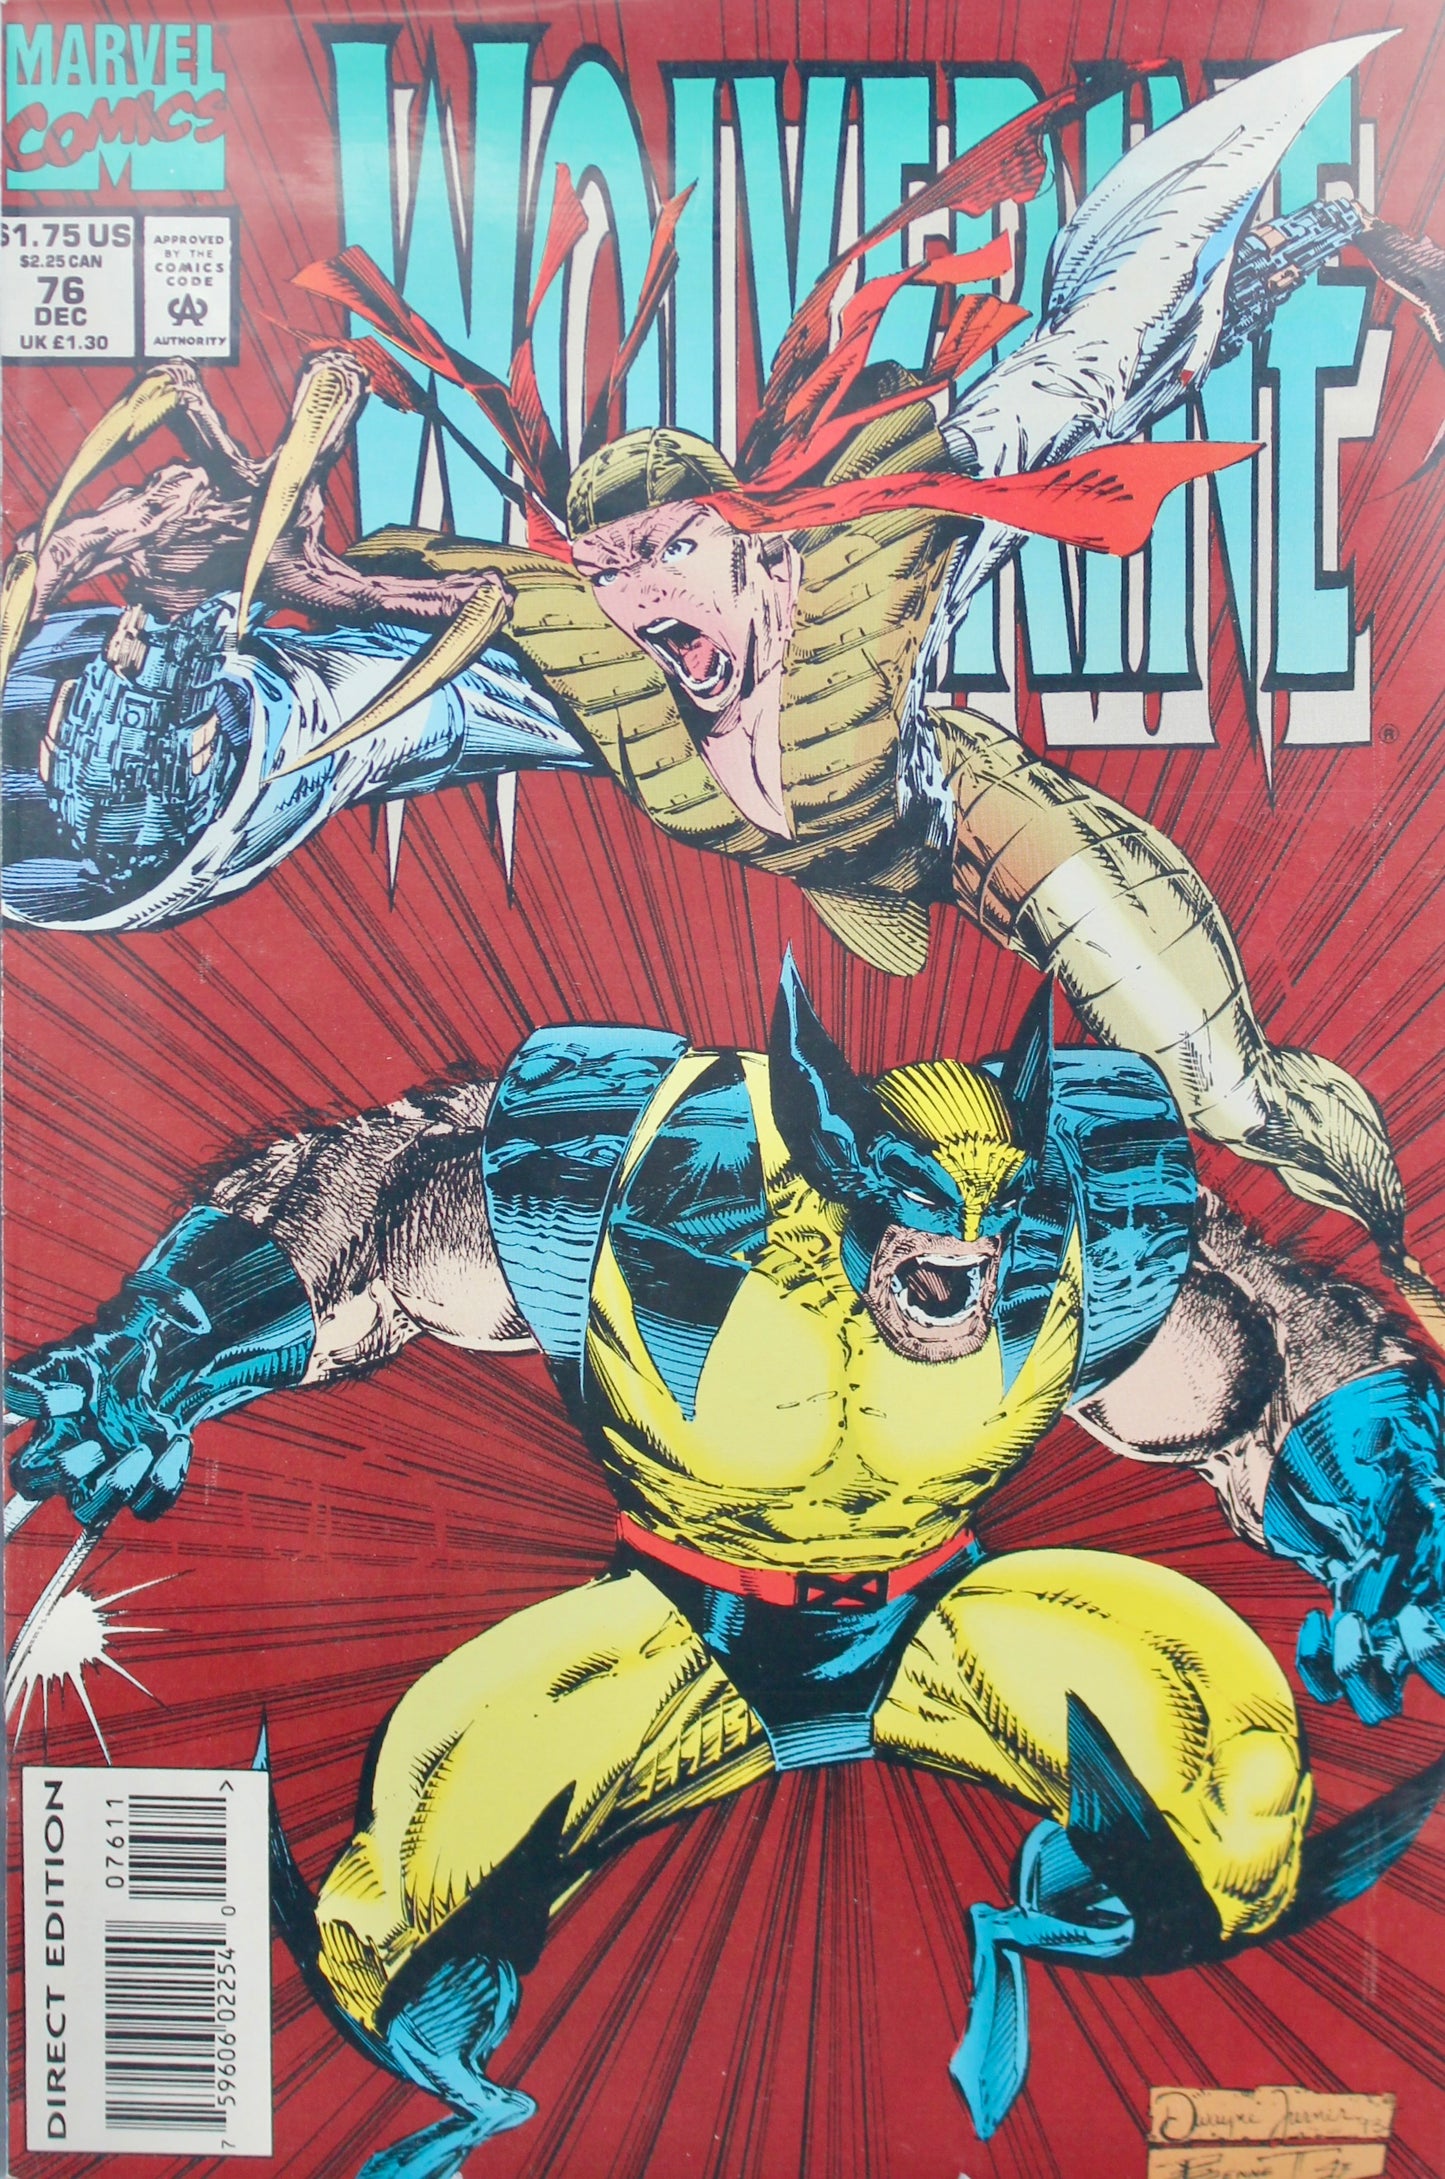 Wolverine #76